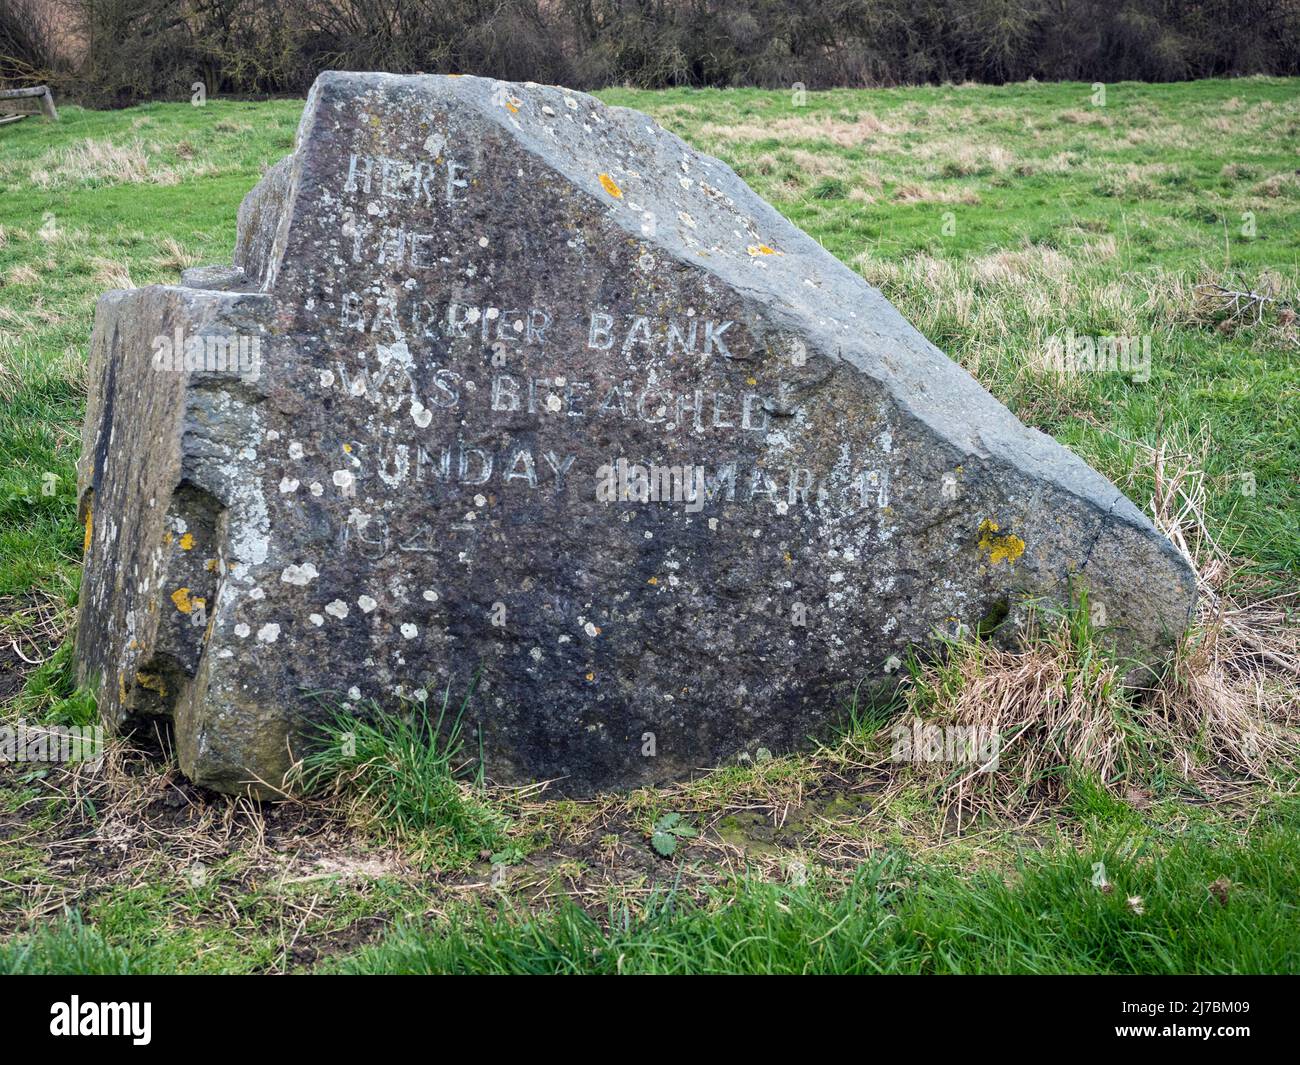 Stein zur Markierung der Stelle, an der am Sonntag, dem 16.. März 1947, in der Nähe von Earith, Cambridgeshire, die Barriere am Ufer des Flusses Great Ouse gebrochen wurde Stockfoto